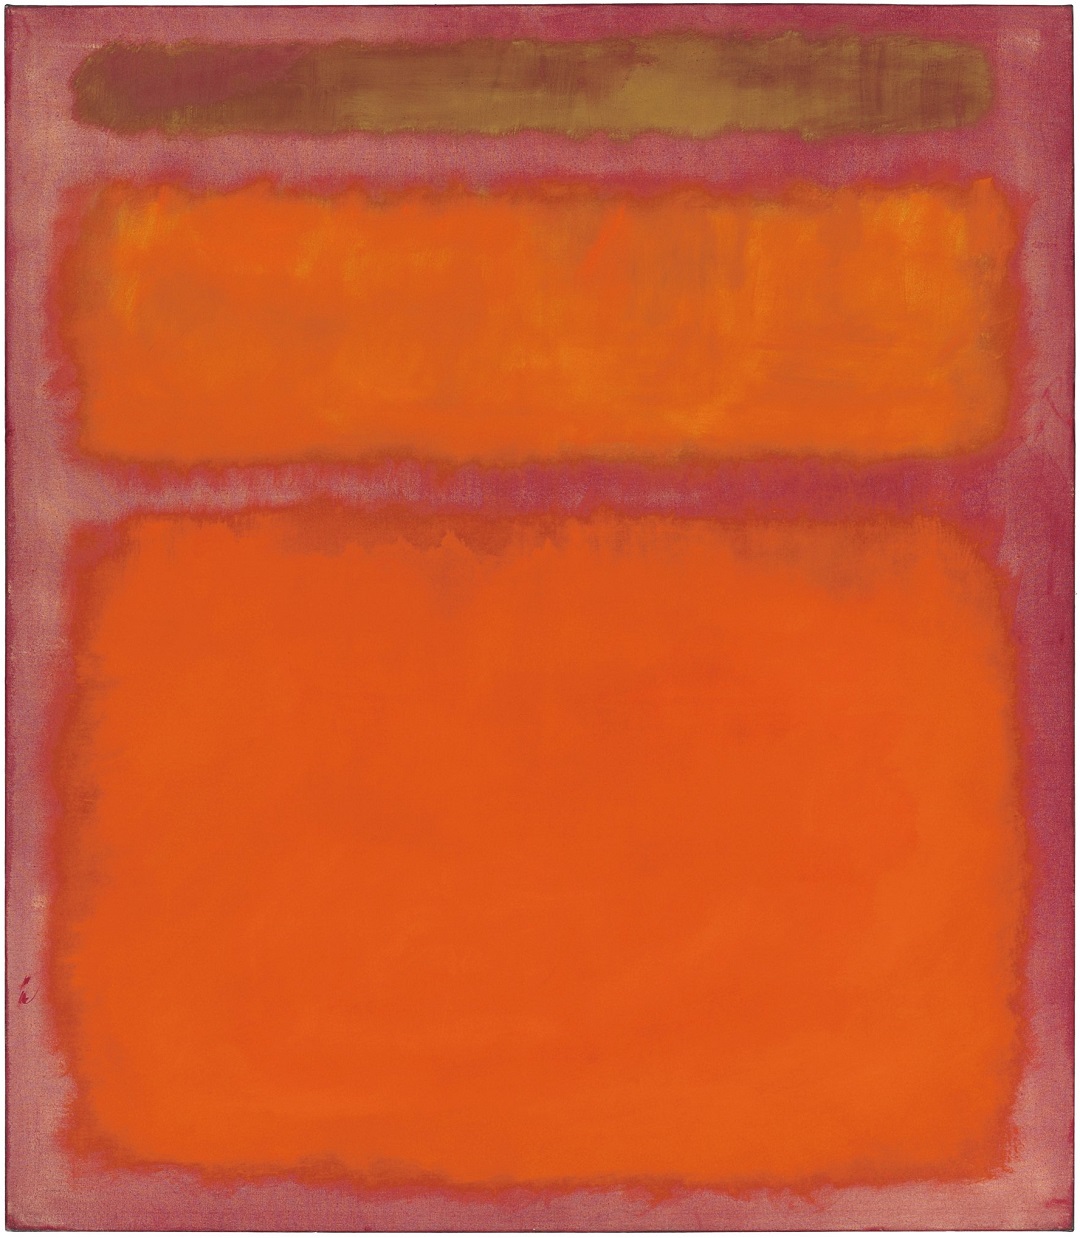 Mark Rothko - Orange, Red, Yellow 1961